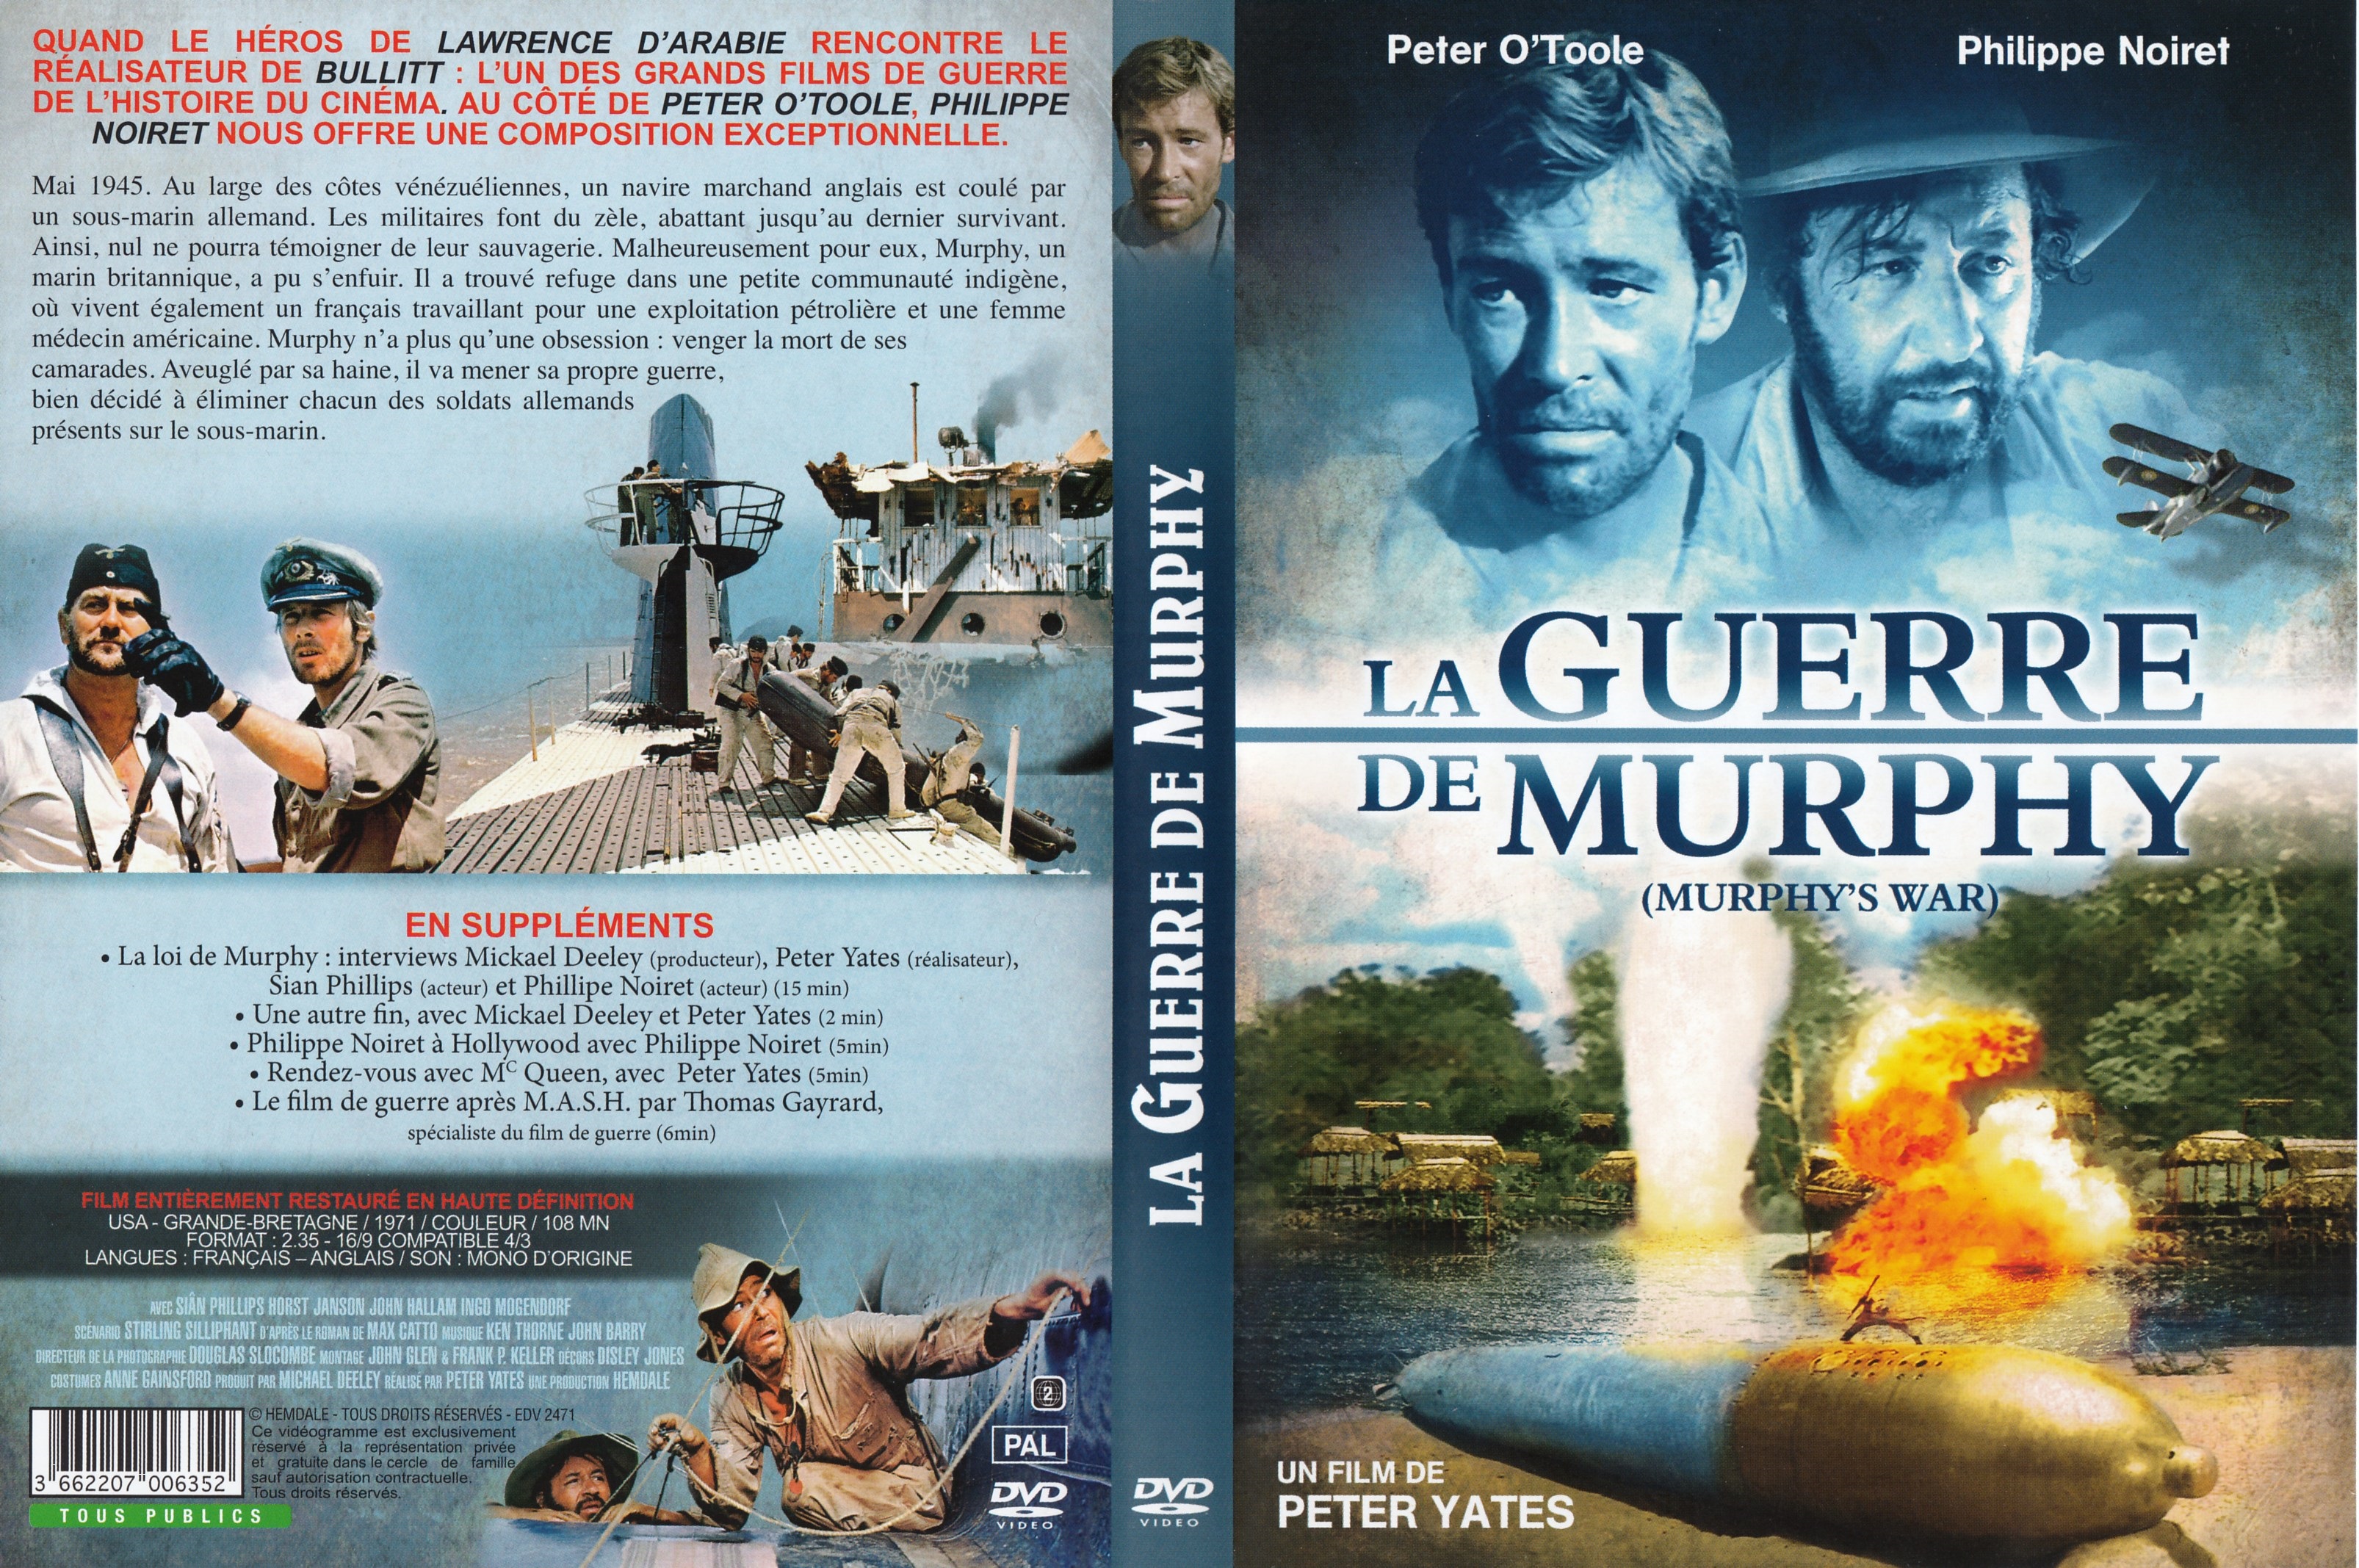 Jaquette DVD La guerre de Murphy v2